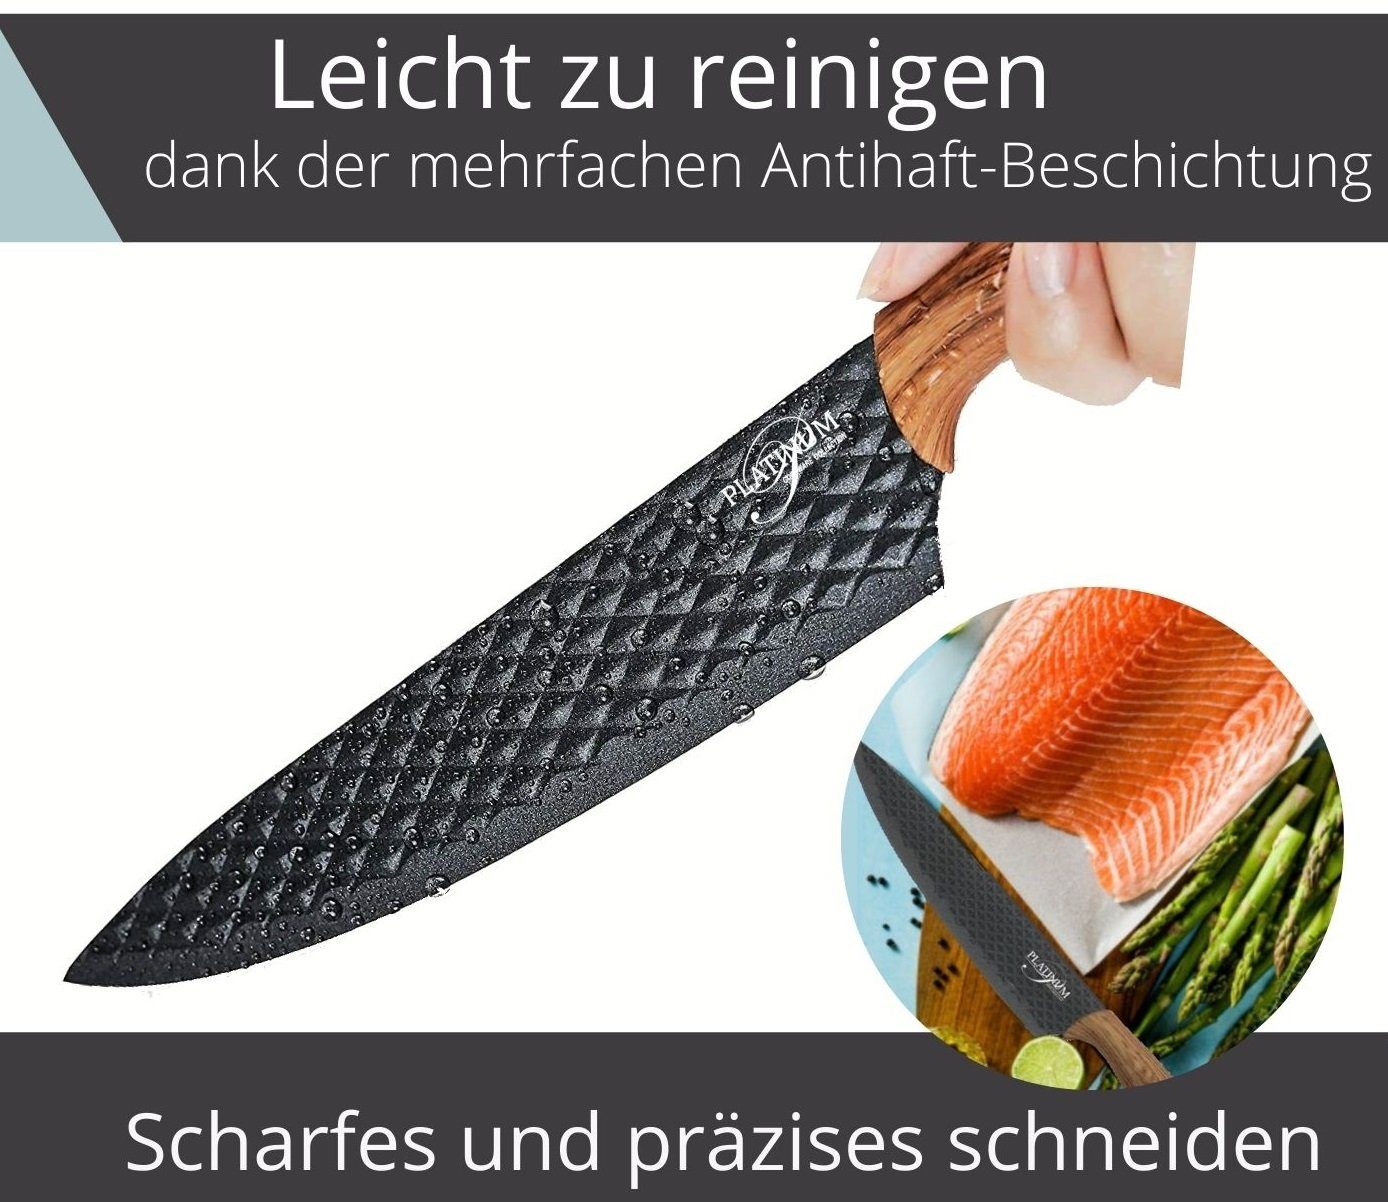 1 teiliges (5 Messerklingen Messer Sparschäler) Messerset hellesholz Messer-Set mit Klappbox in scharfe & 6 Fleischmesser Cheffinger Magnetverschluss Küchenmesser